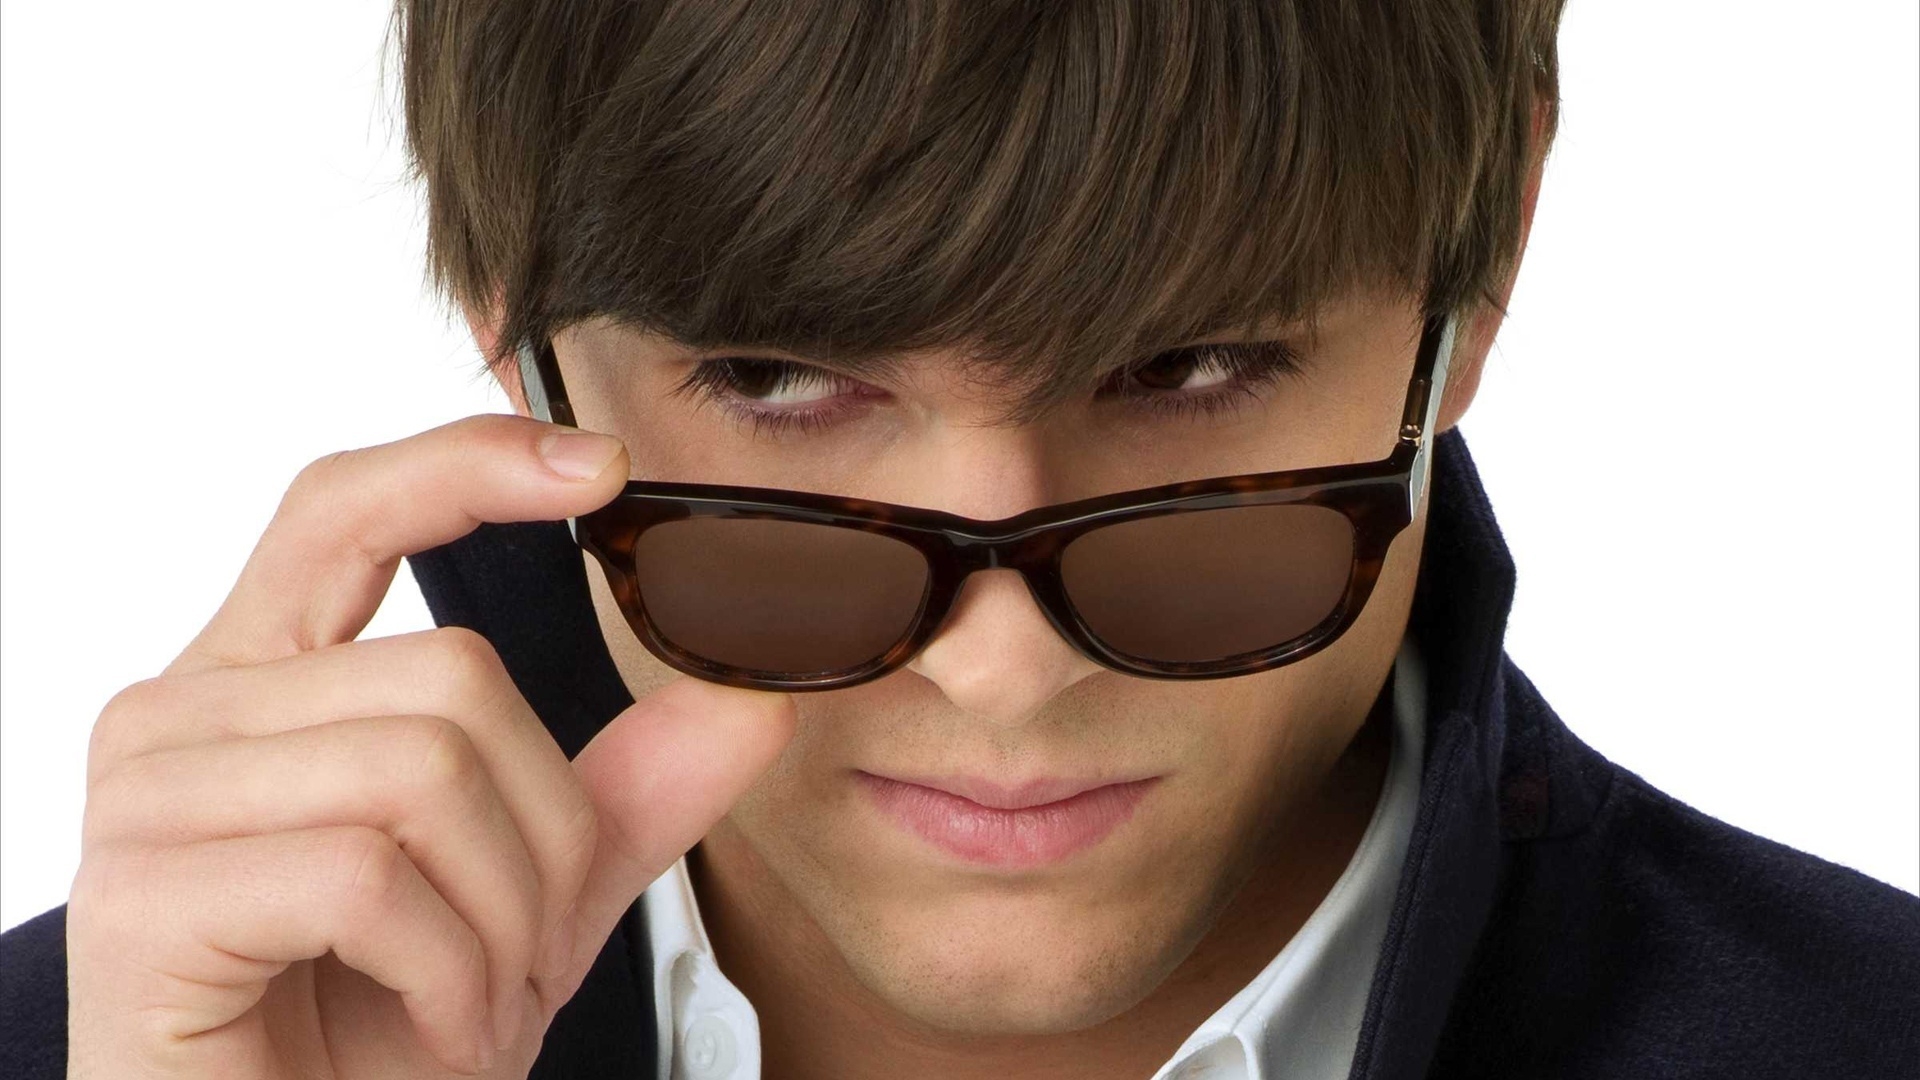 Ashton Kutcher with Sunglasses for 1920 x 1080 HDTV 1080p resolution